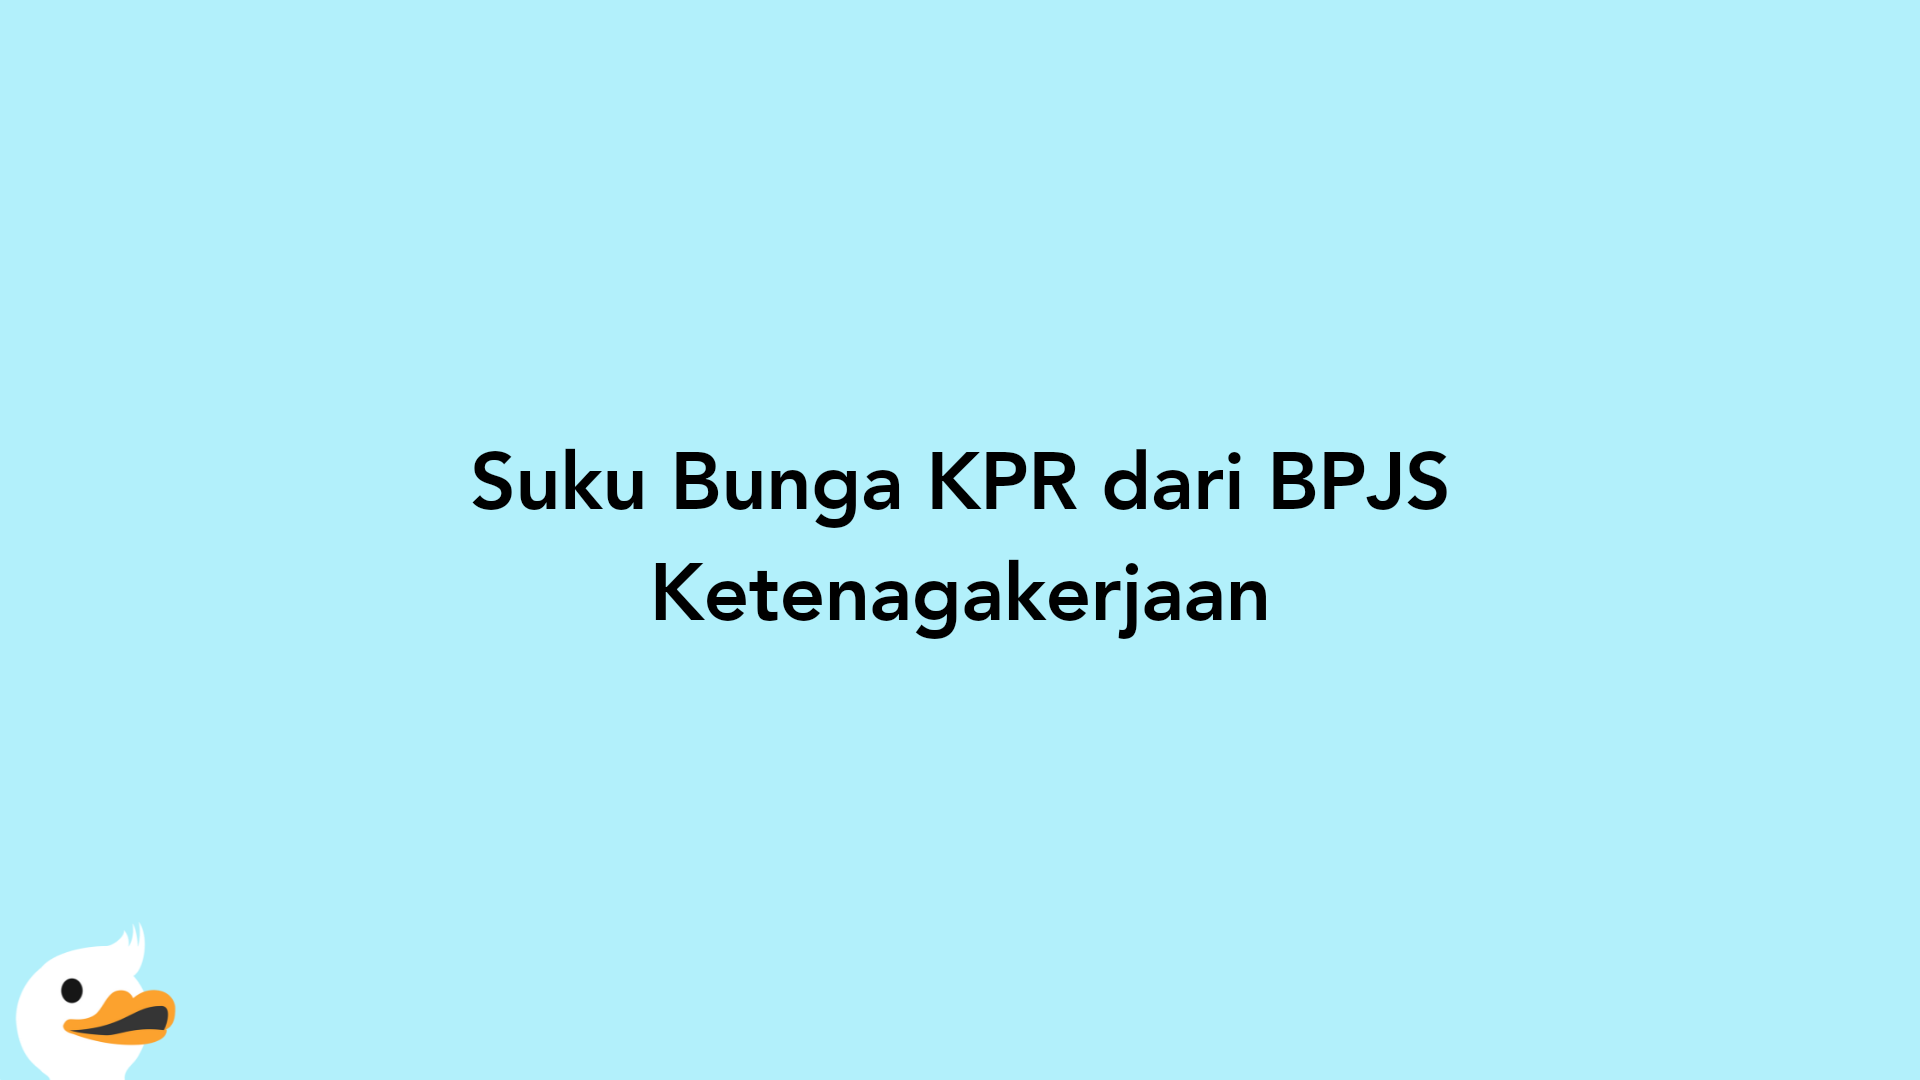 Suku Bunga KPR dari BPJS Ketenagakerjaan